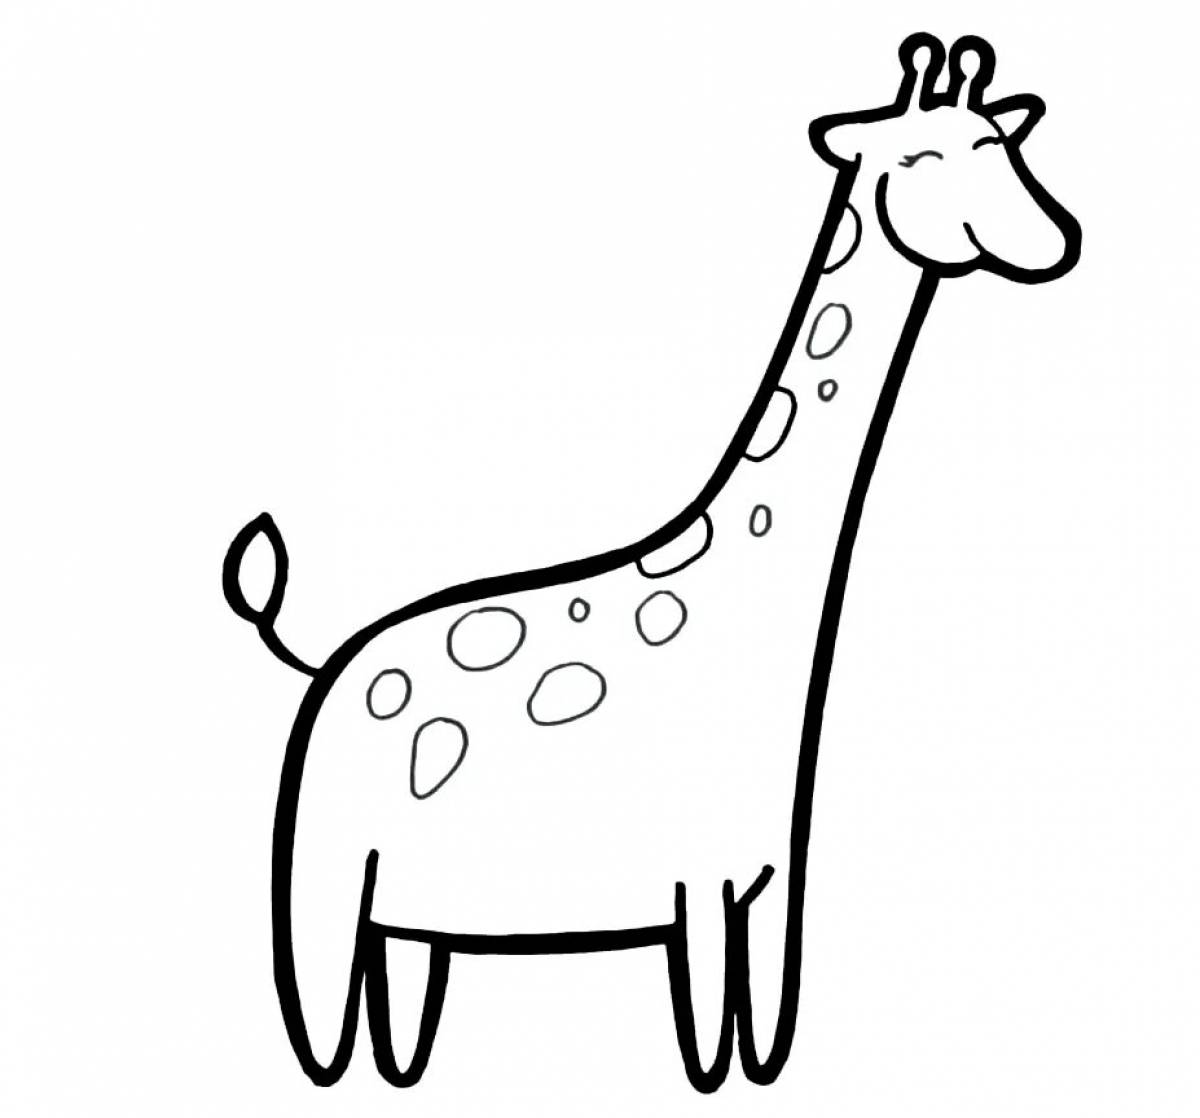 Incredible giraffe coloring book for kids